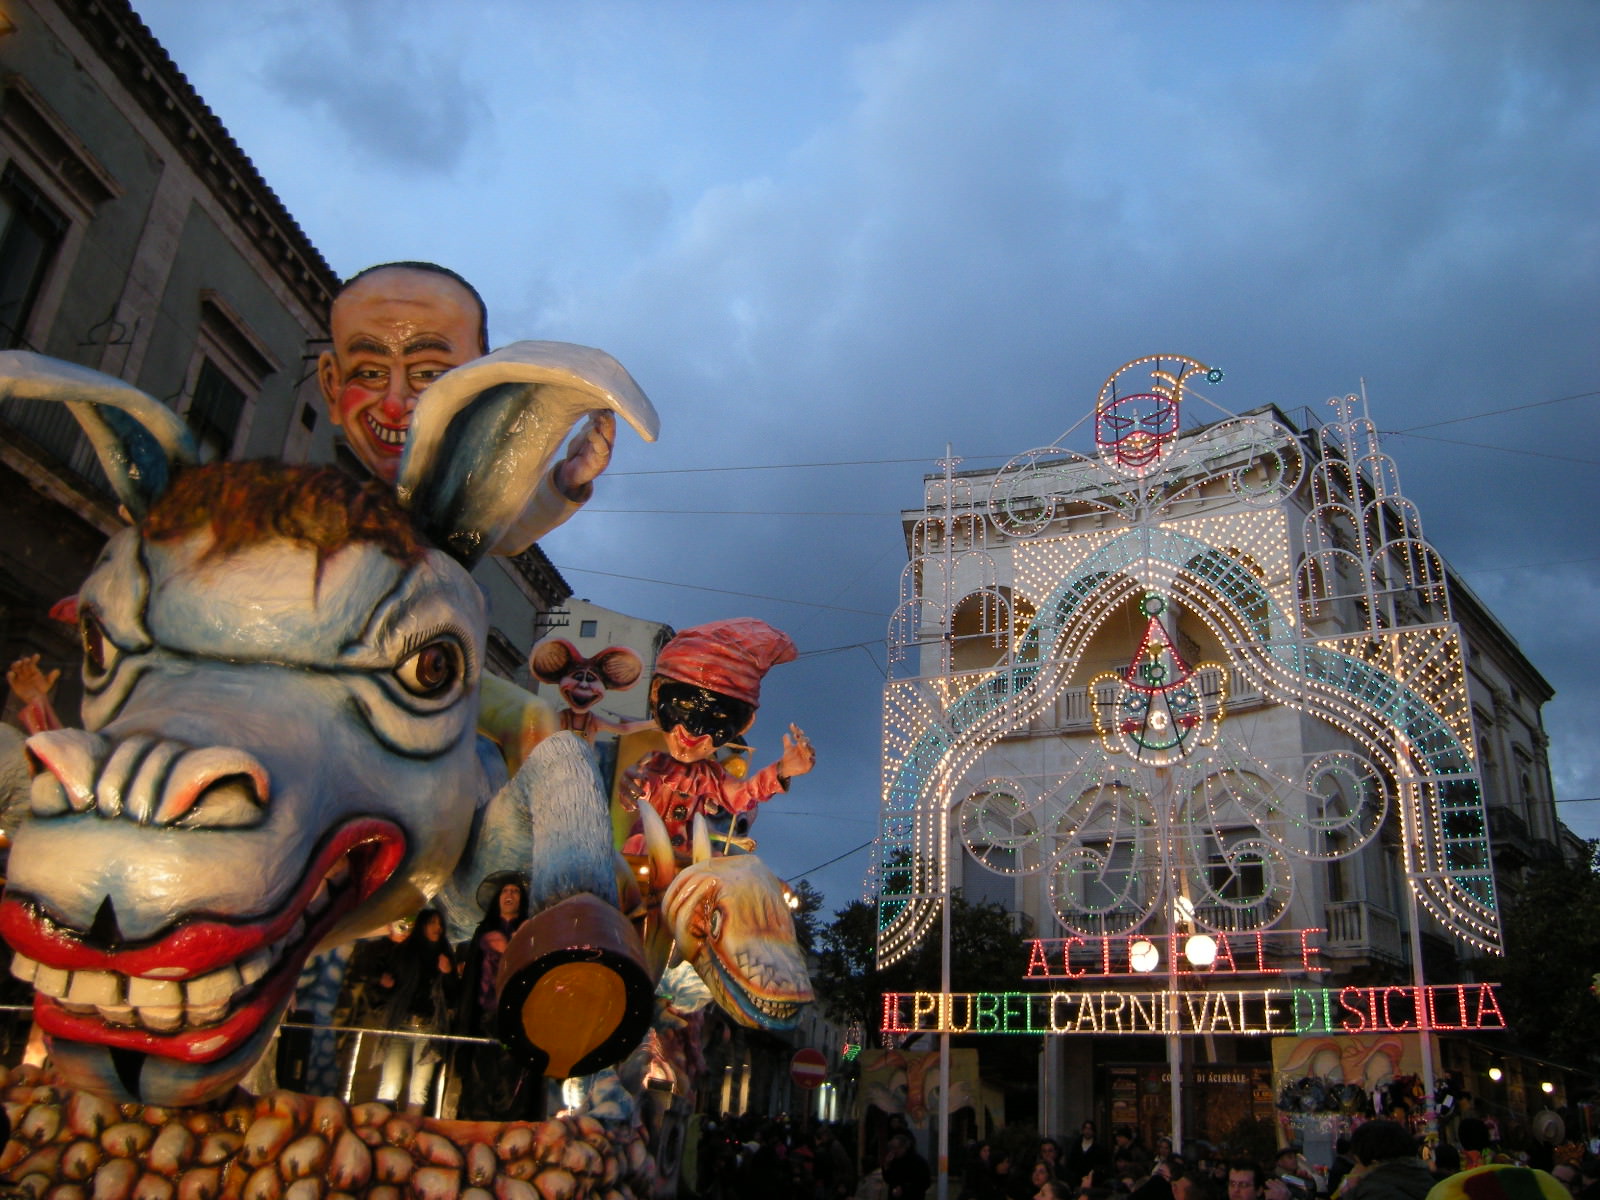 Tra musica e maschere, continua lo spettacolo del Carnevale di Acireale